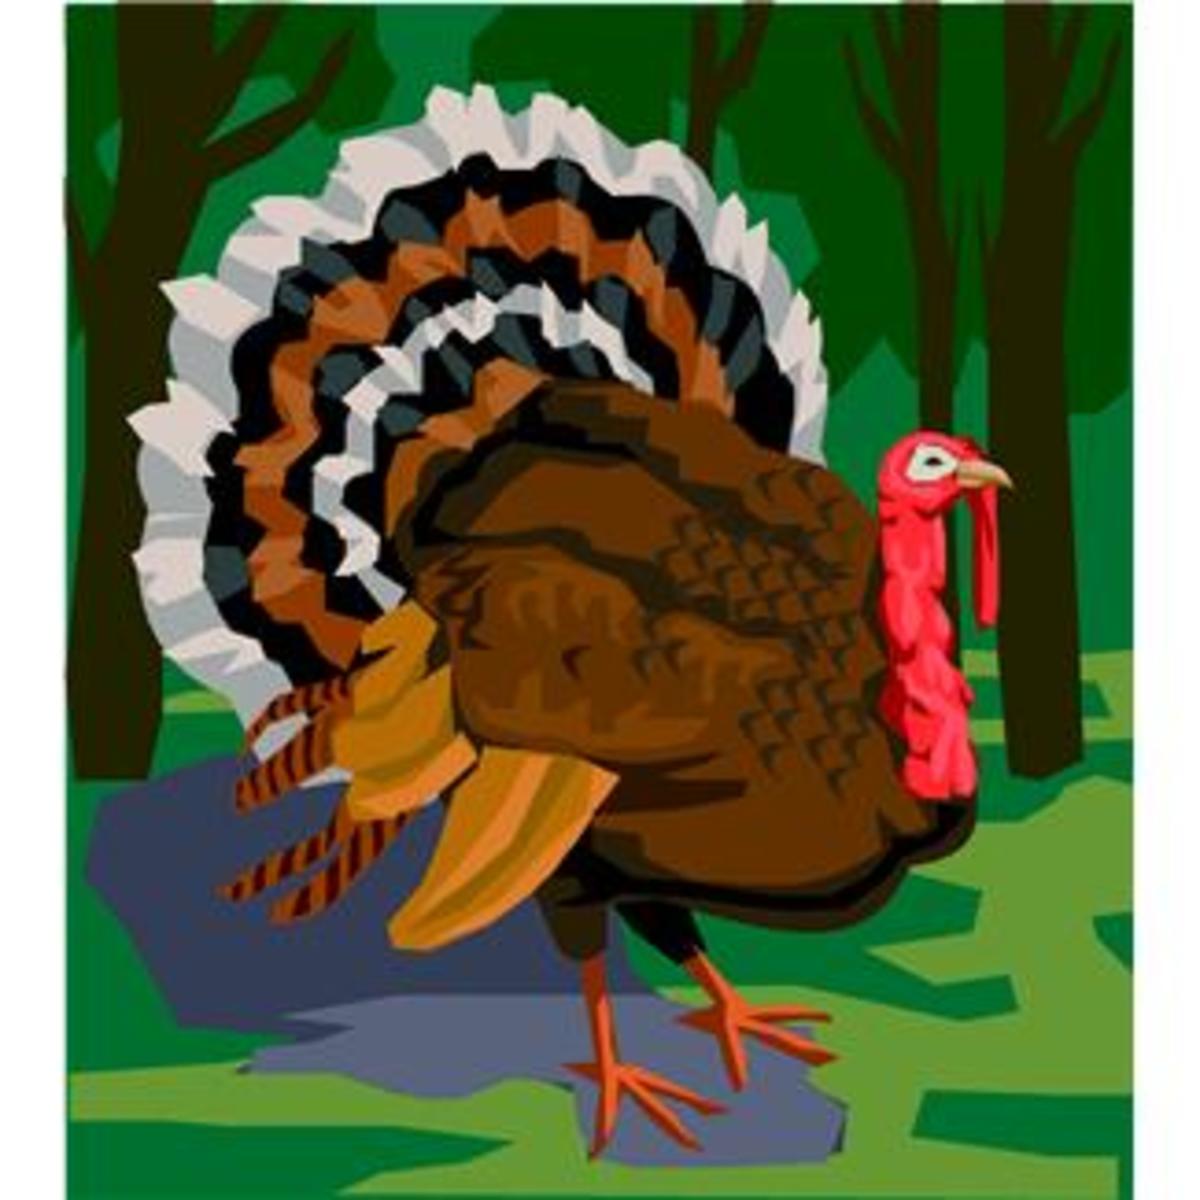 Thanksgiving Turkey Clip Art